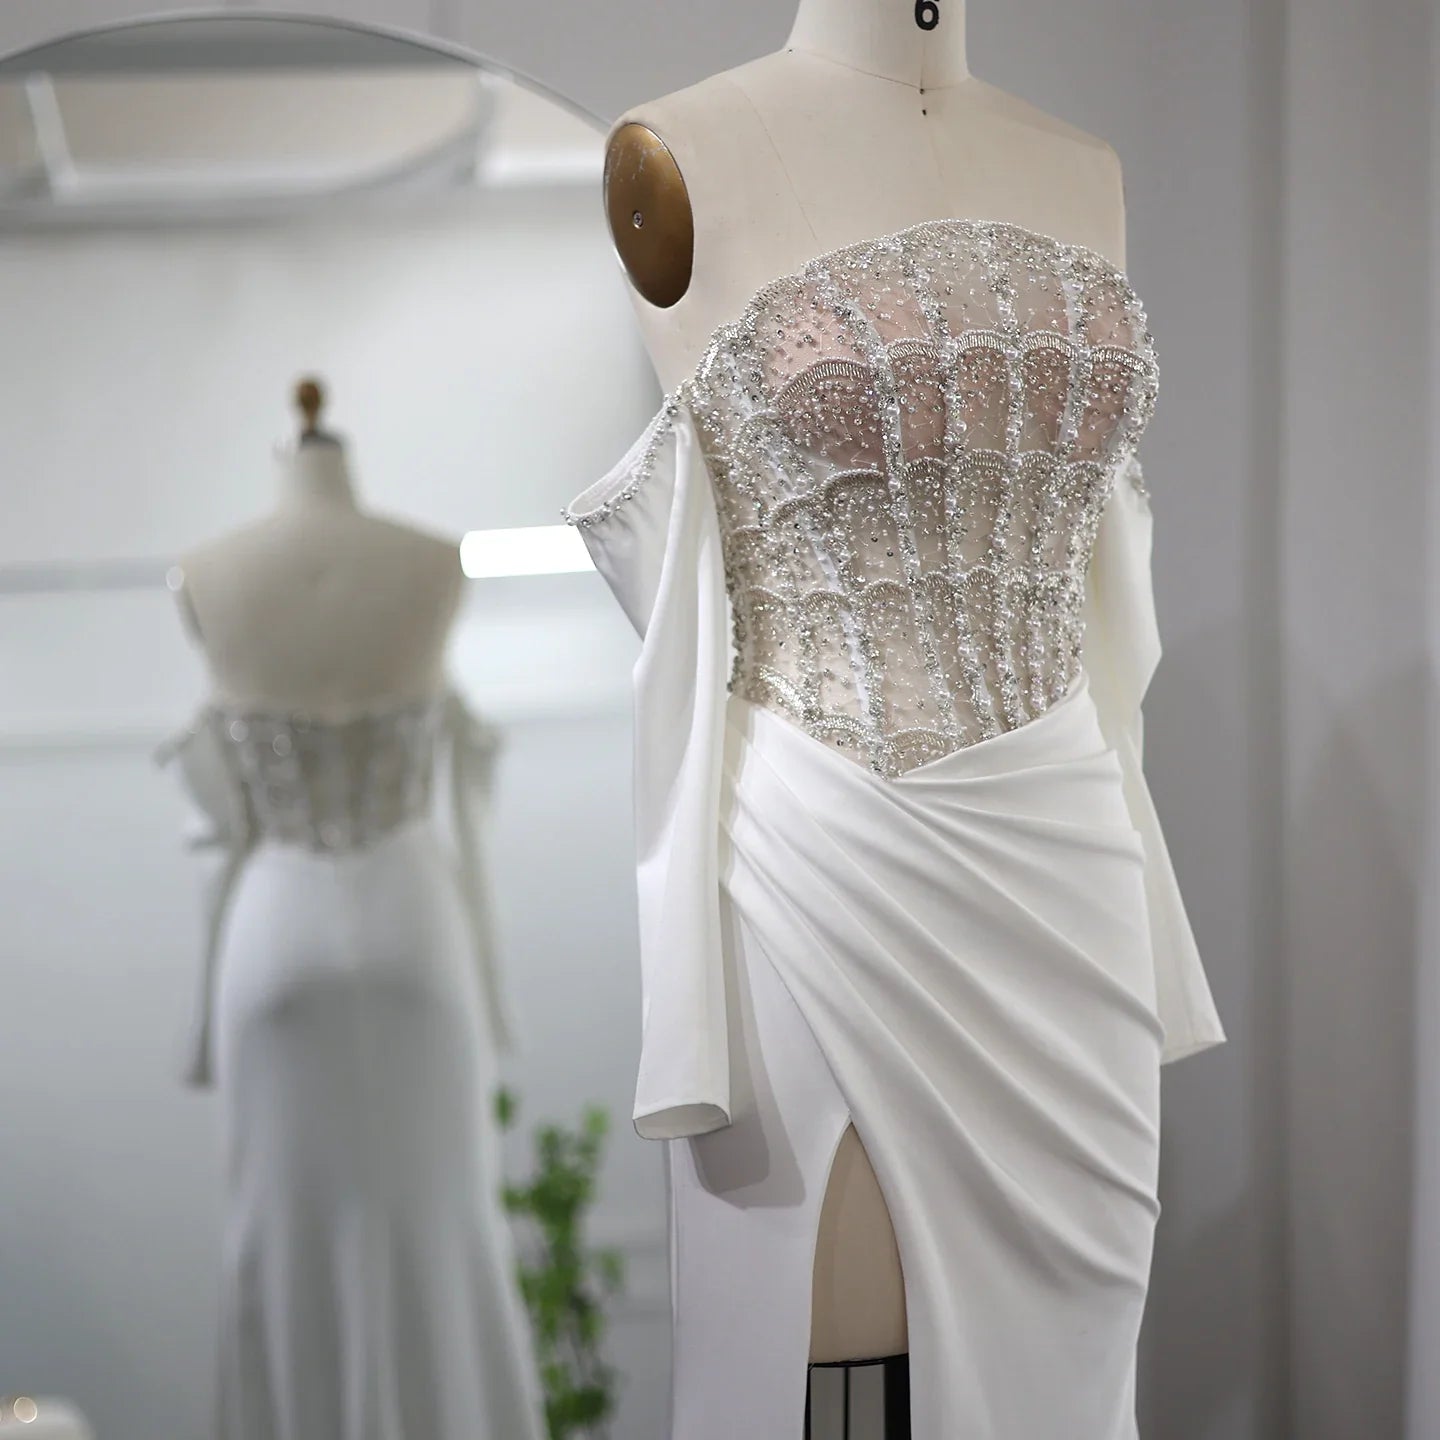 Mewah Dubai Mermaid White Evening Dress Sexy Scalloped High Slit Prom Gaun untuk Pesta Perkahwinan Wanita